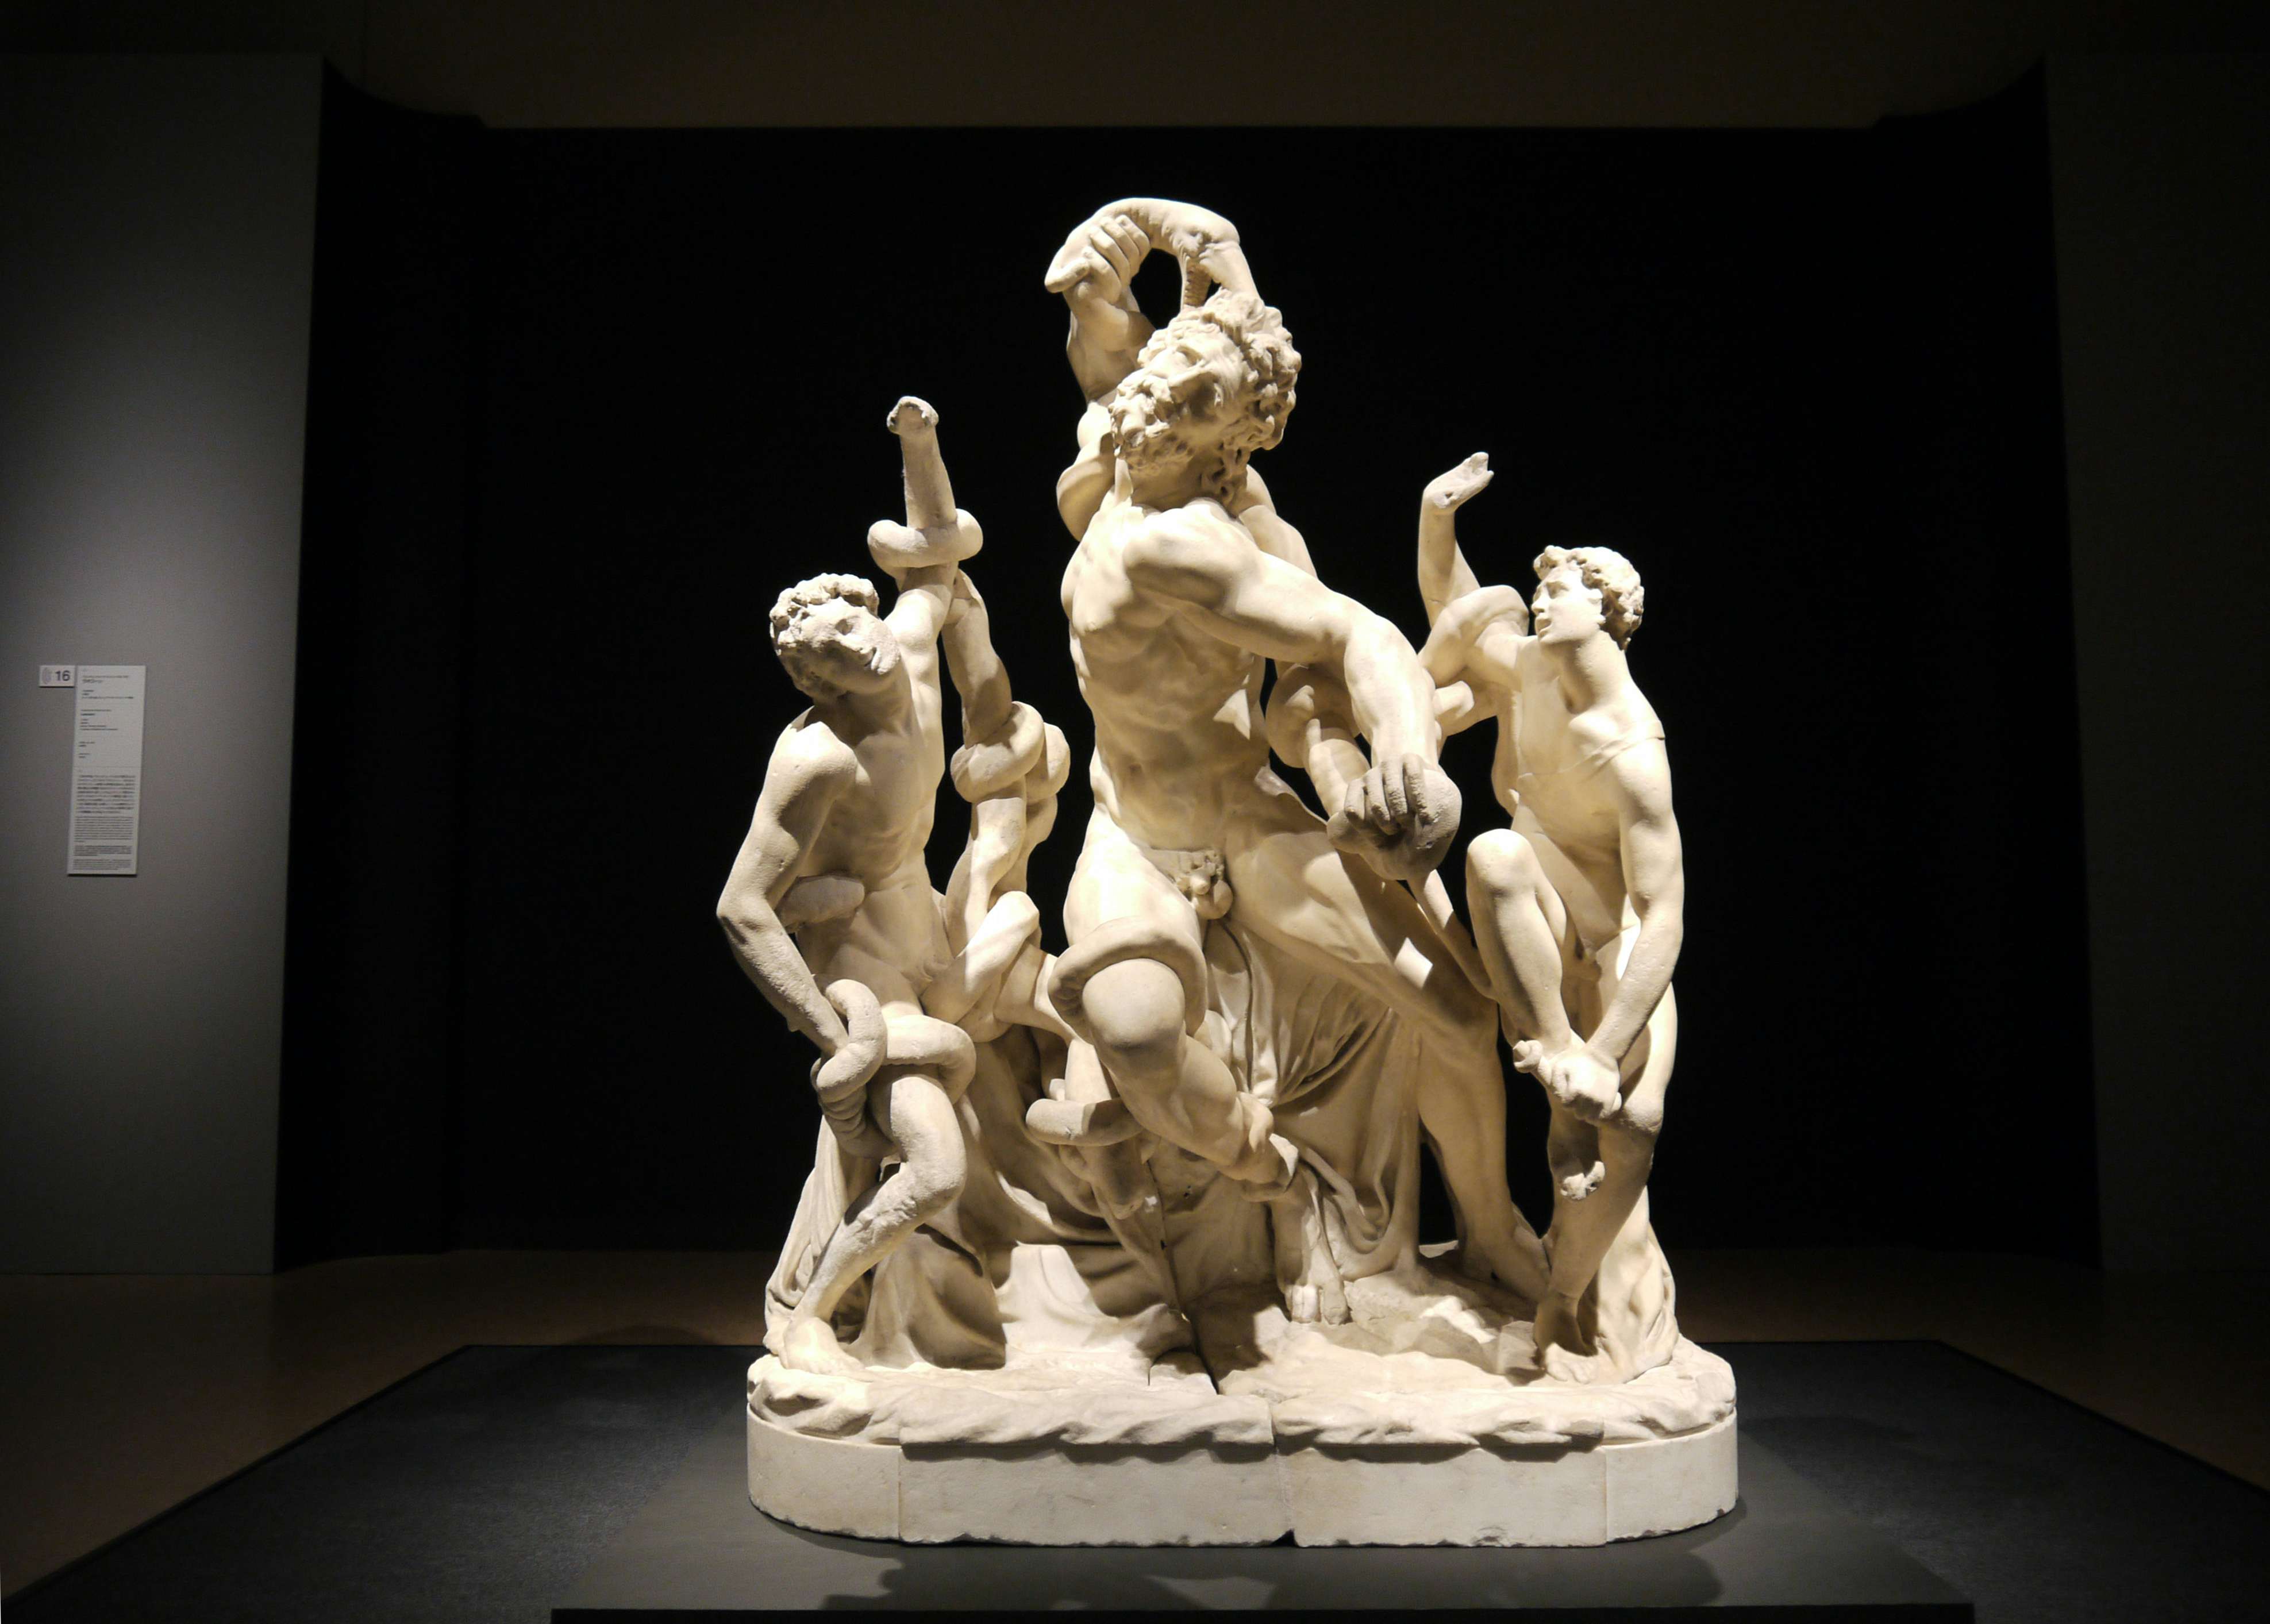 ミケランジェロの傑作彫刻 ついに初来日 究極の理想の身体 に迫る展覧会 国立西洋美術館で開幕 美術手帖